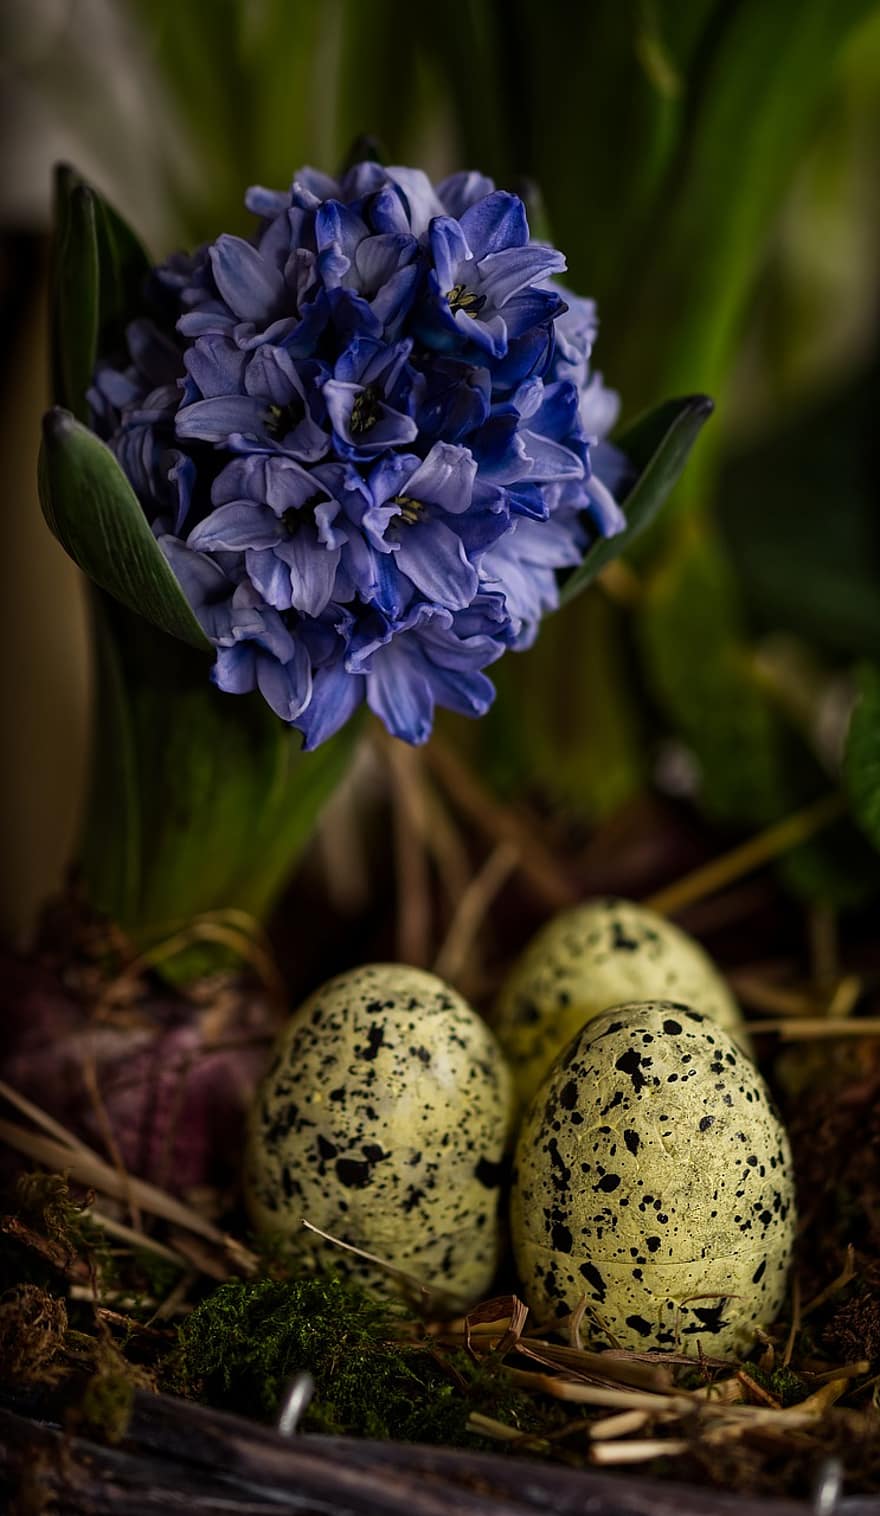 velikonoční, vejce, květiny, hnízdo, velikonoční vajíčka, barevné vejce, velikonoční kolekce, jaro